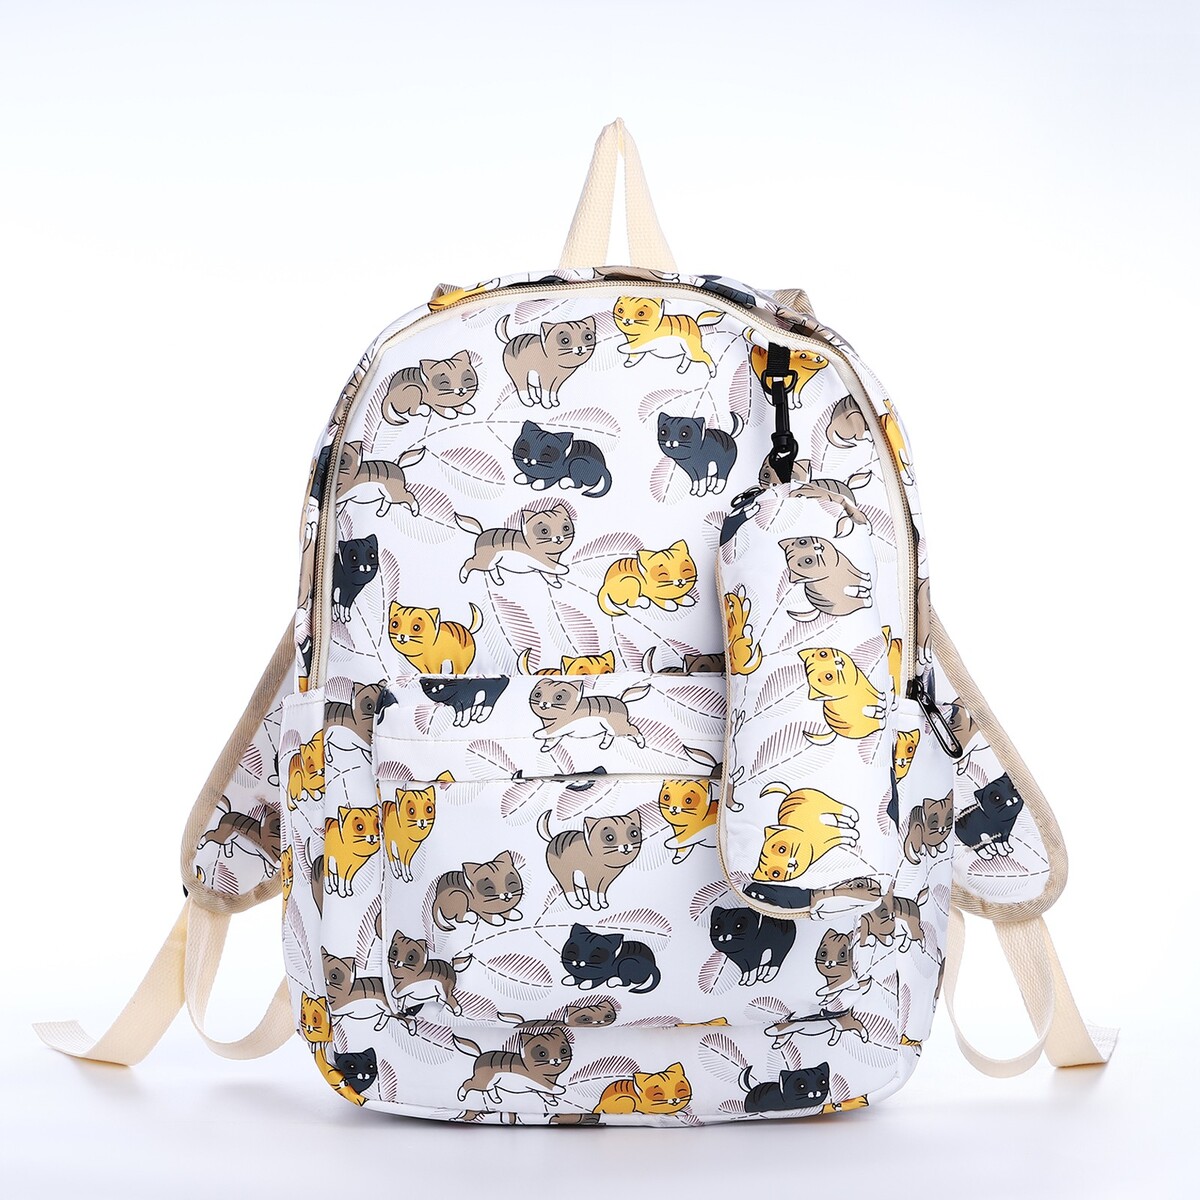 Рюкзак школьный из текстиля на молнии, 3 кармана, пенал, цвет белый/разноцветный рюкзак школьный из текстиля на молнии 3 кармана пенал белый разно ный